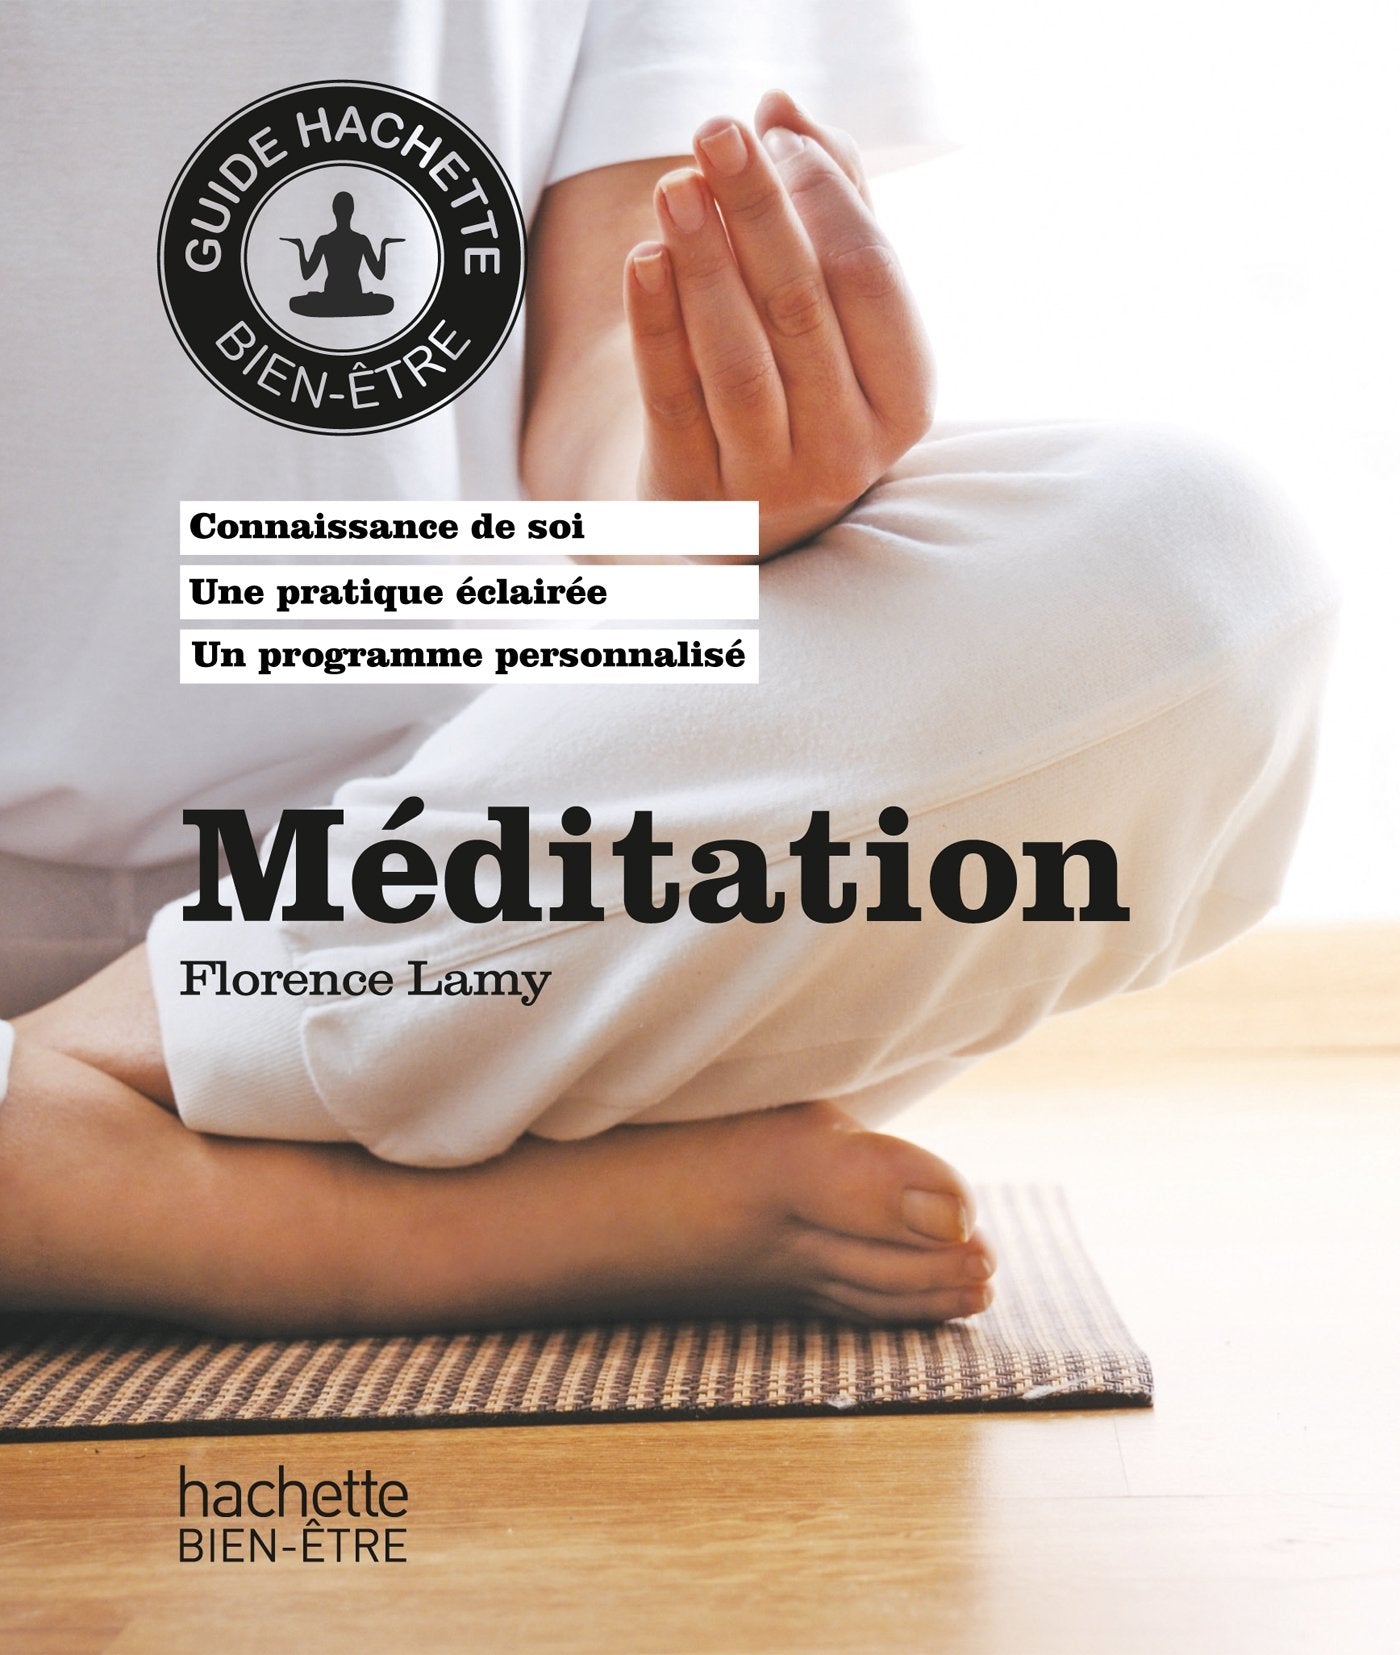 Guide Hachette Bien-être : Méditation - Florence Lemay